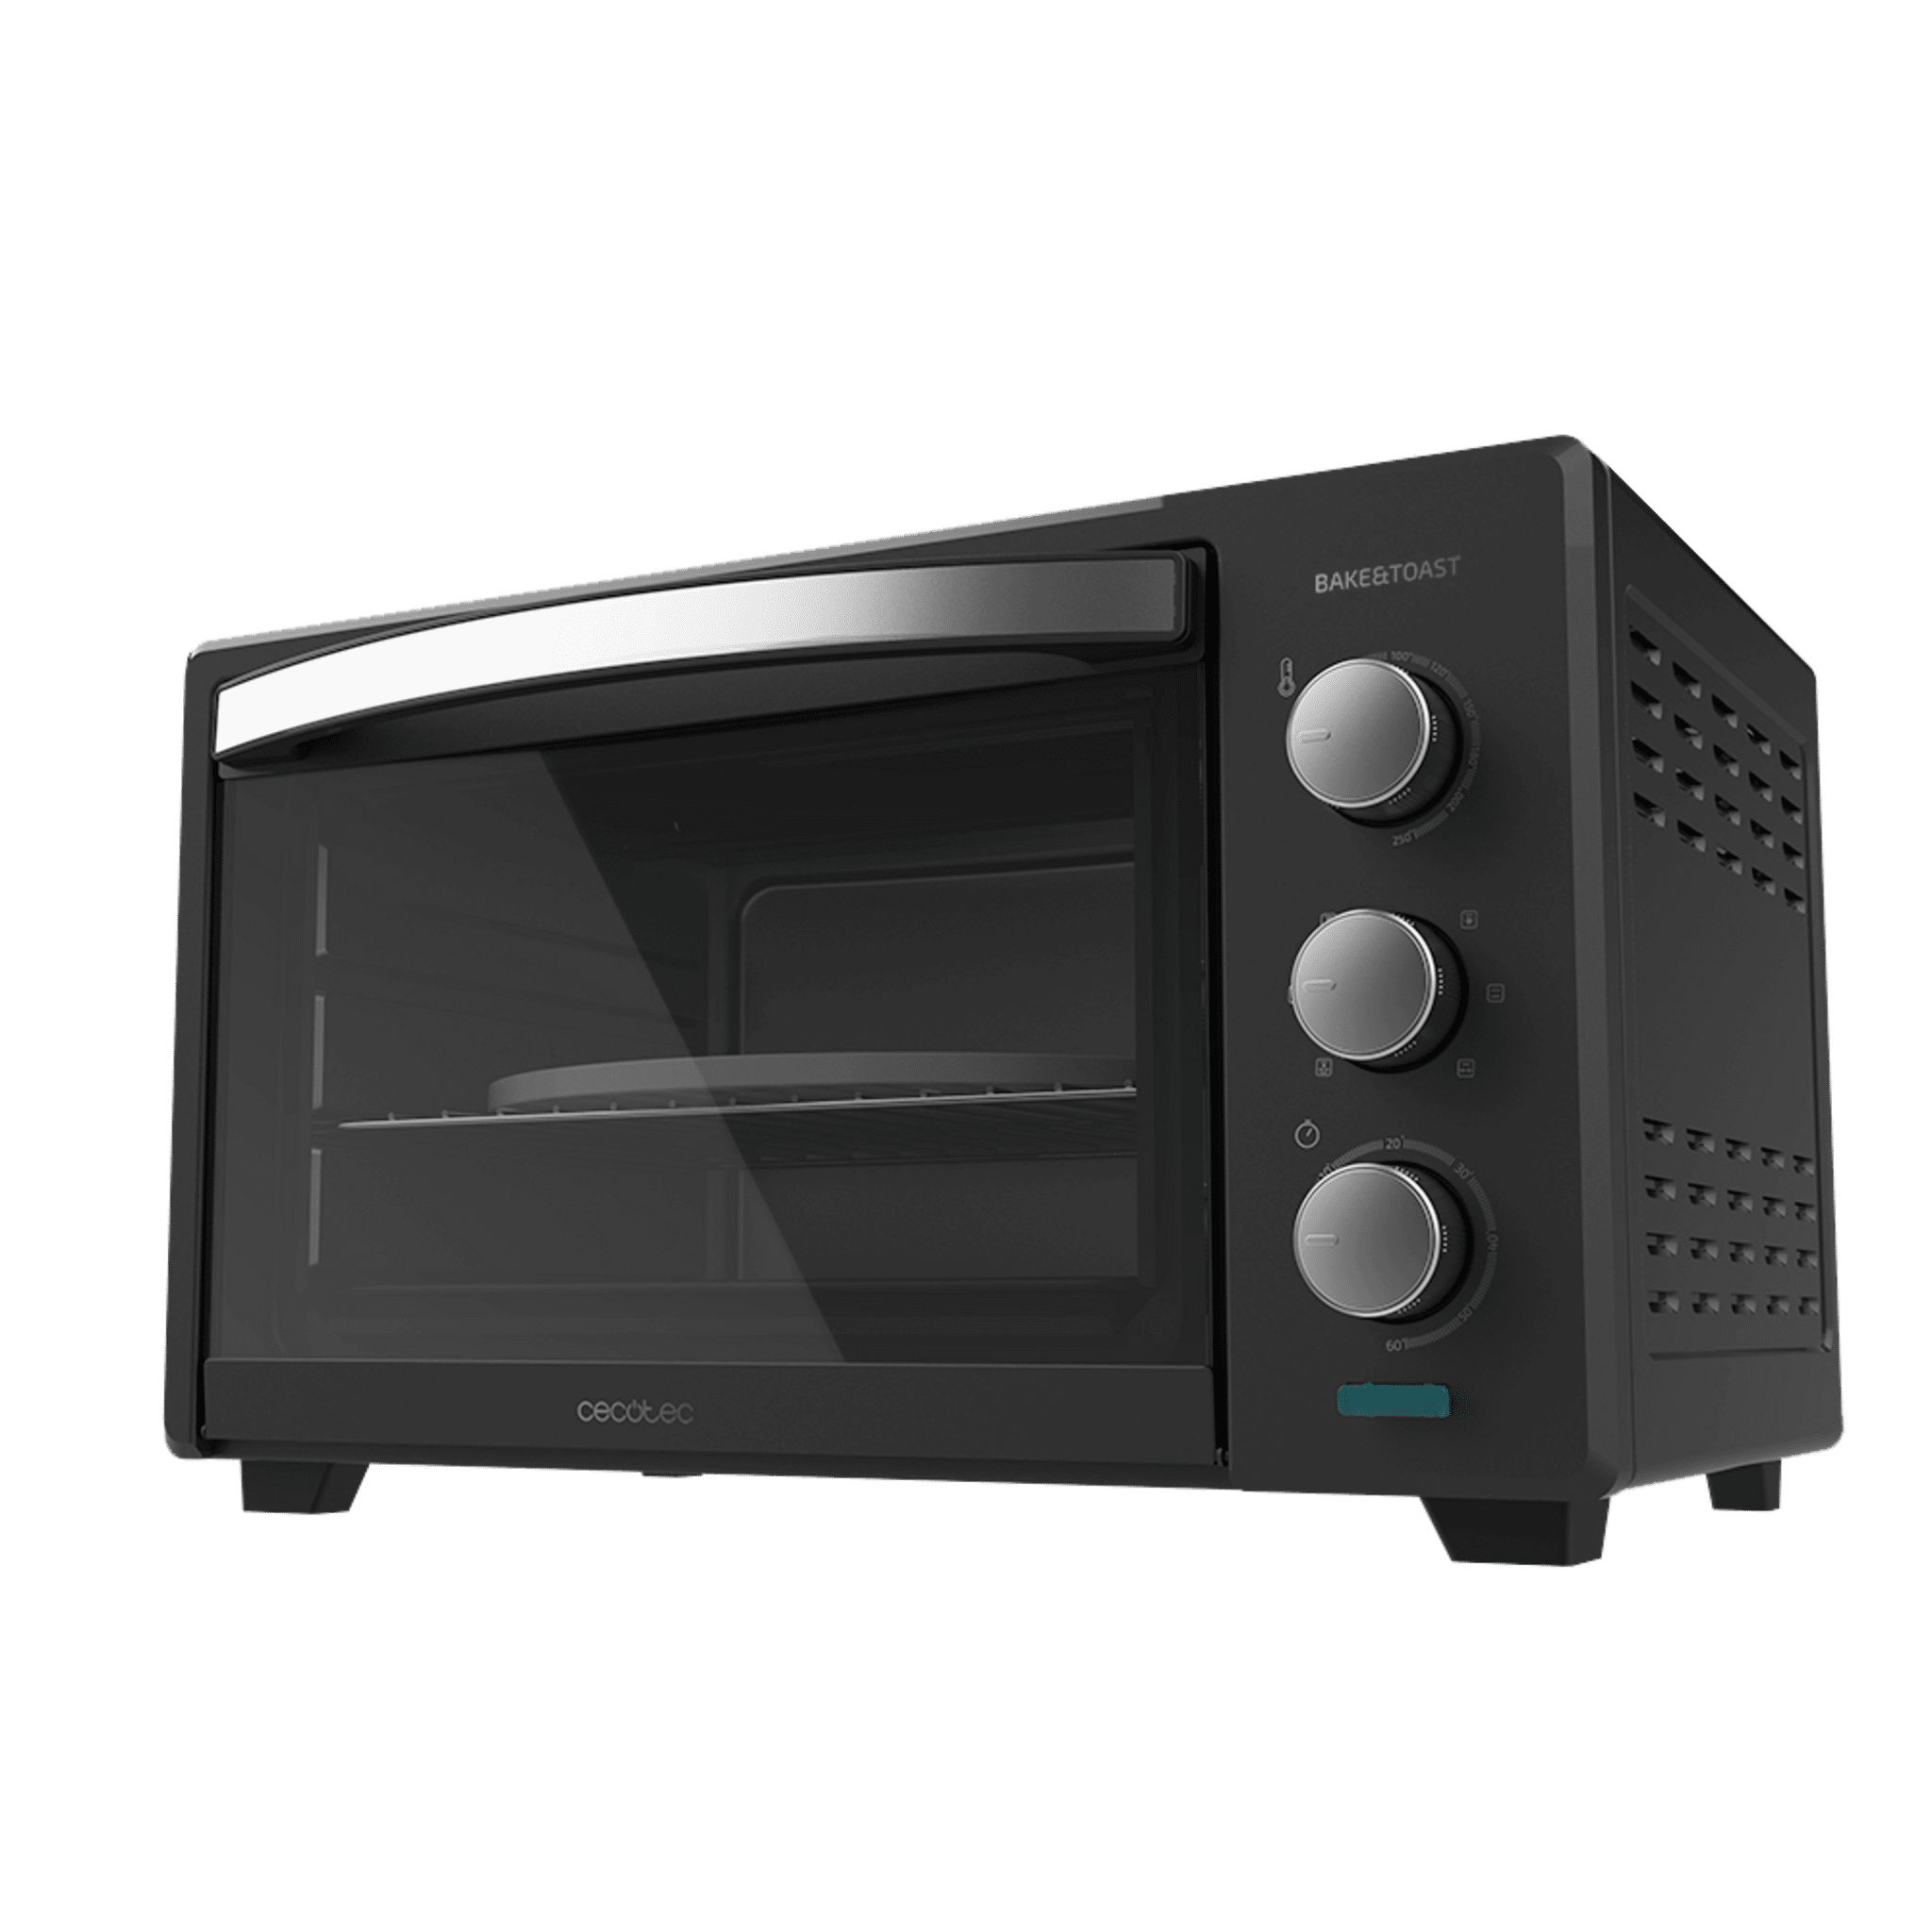 30 L Bake&Toast 3000 4Pizza Black Gyro Tischkonvektionsofen. 1600 W, Multifunktion, Pizzabackstein, doppelte Glas- und Stahltür, inkl. Drehbräter.